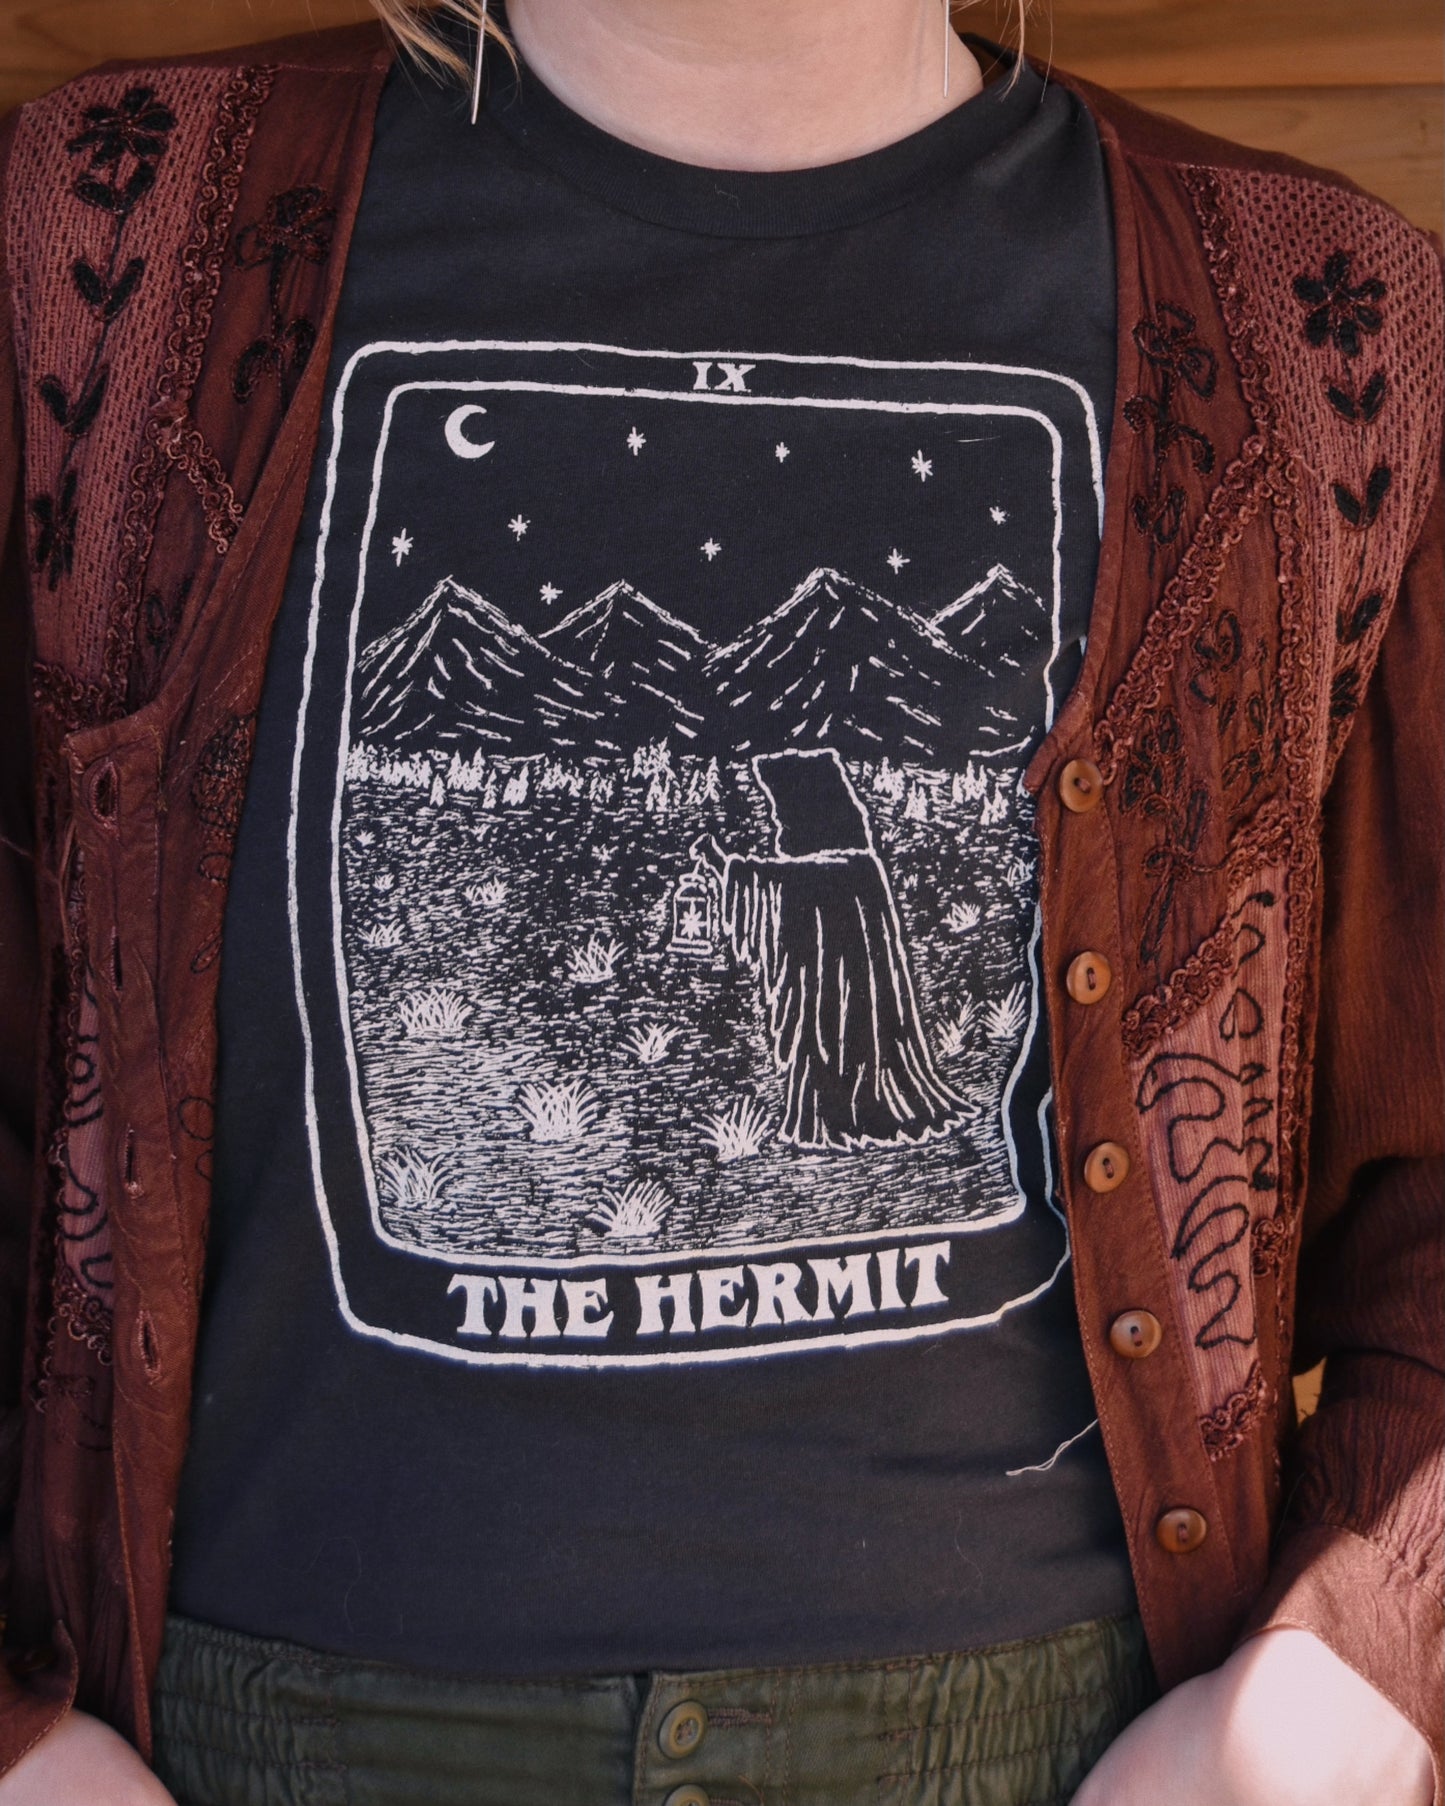 The Hermit Tee